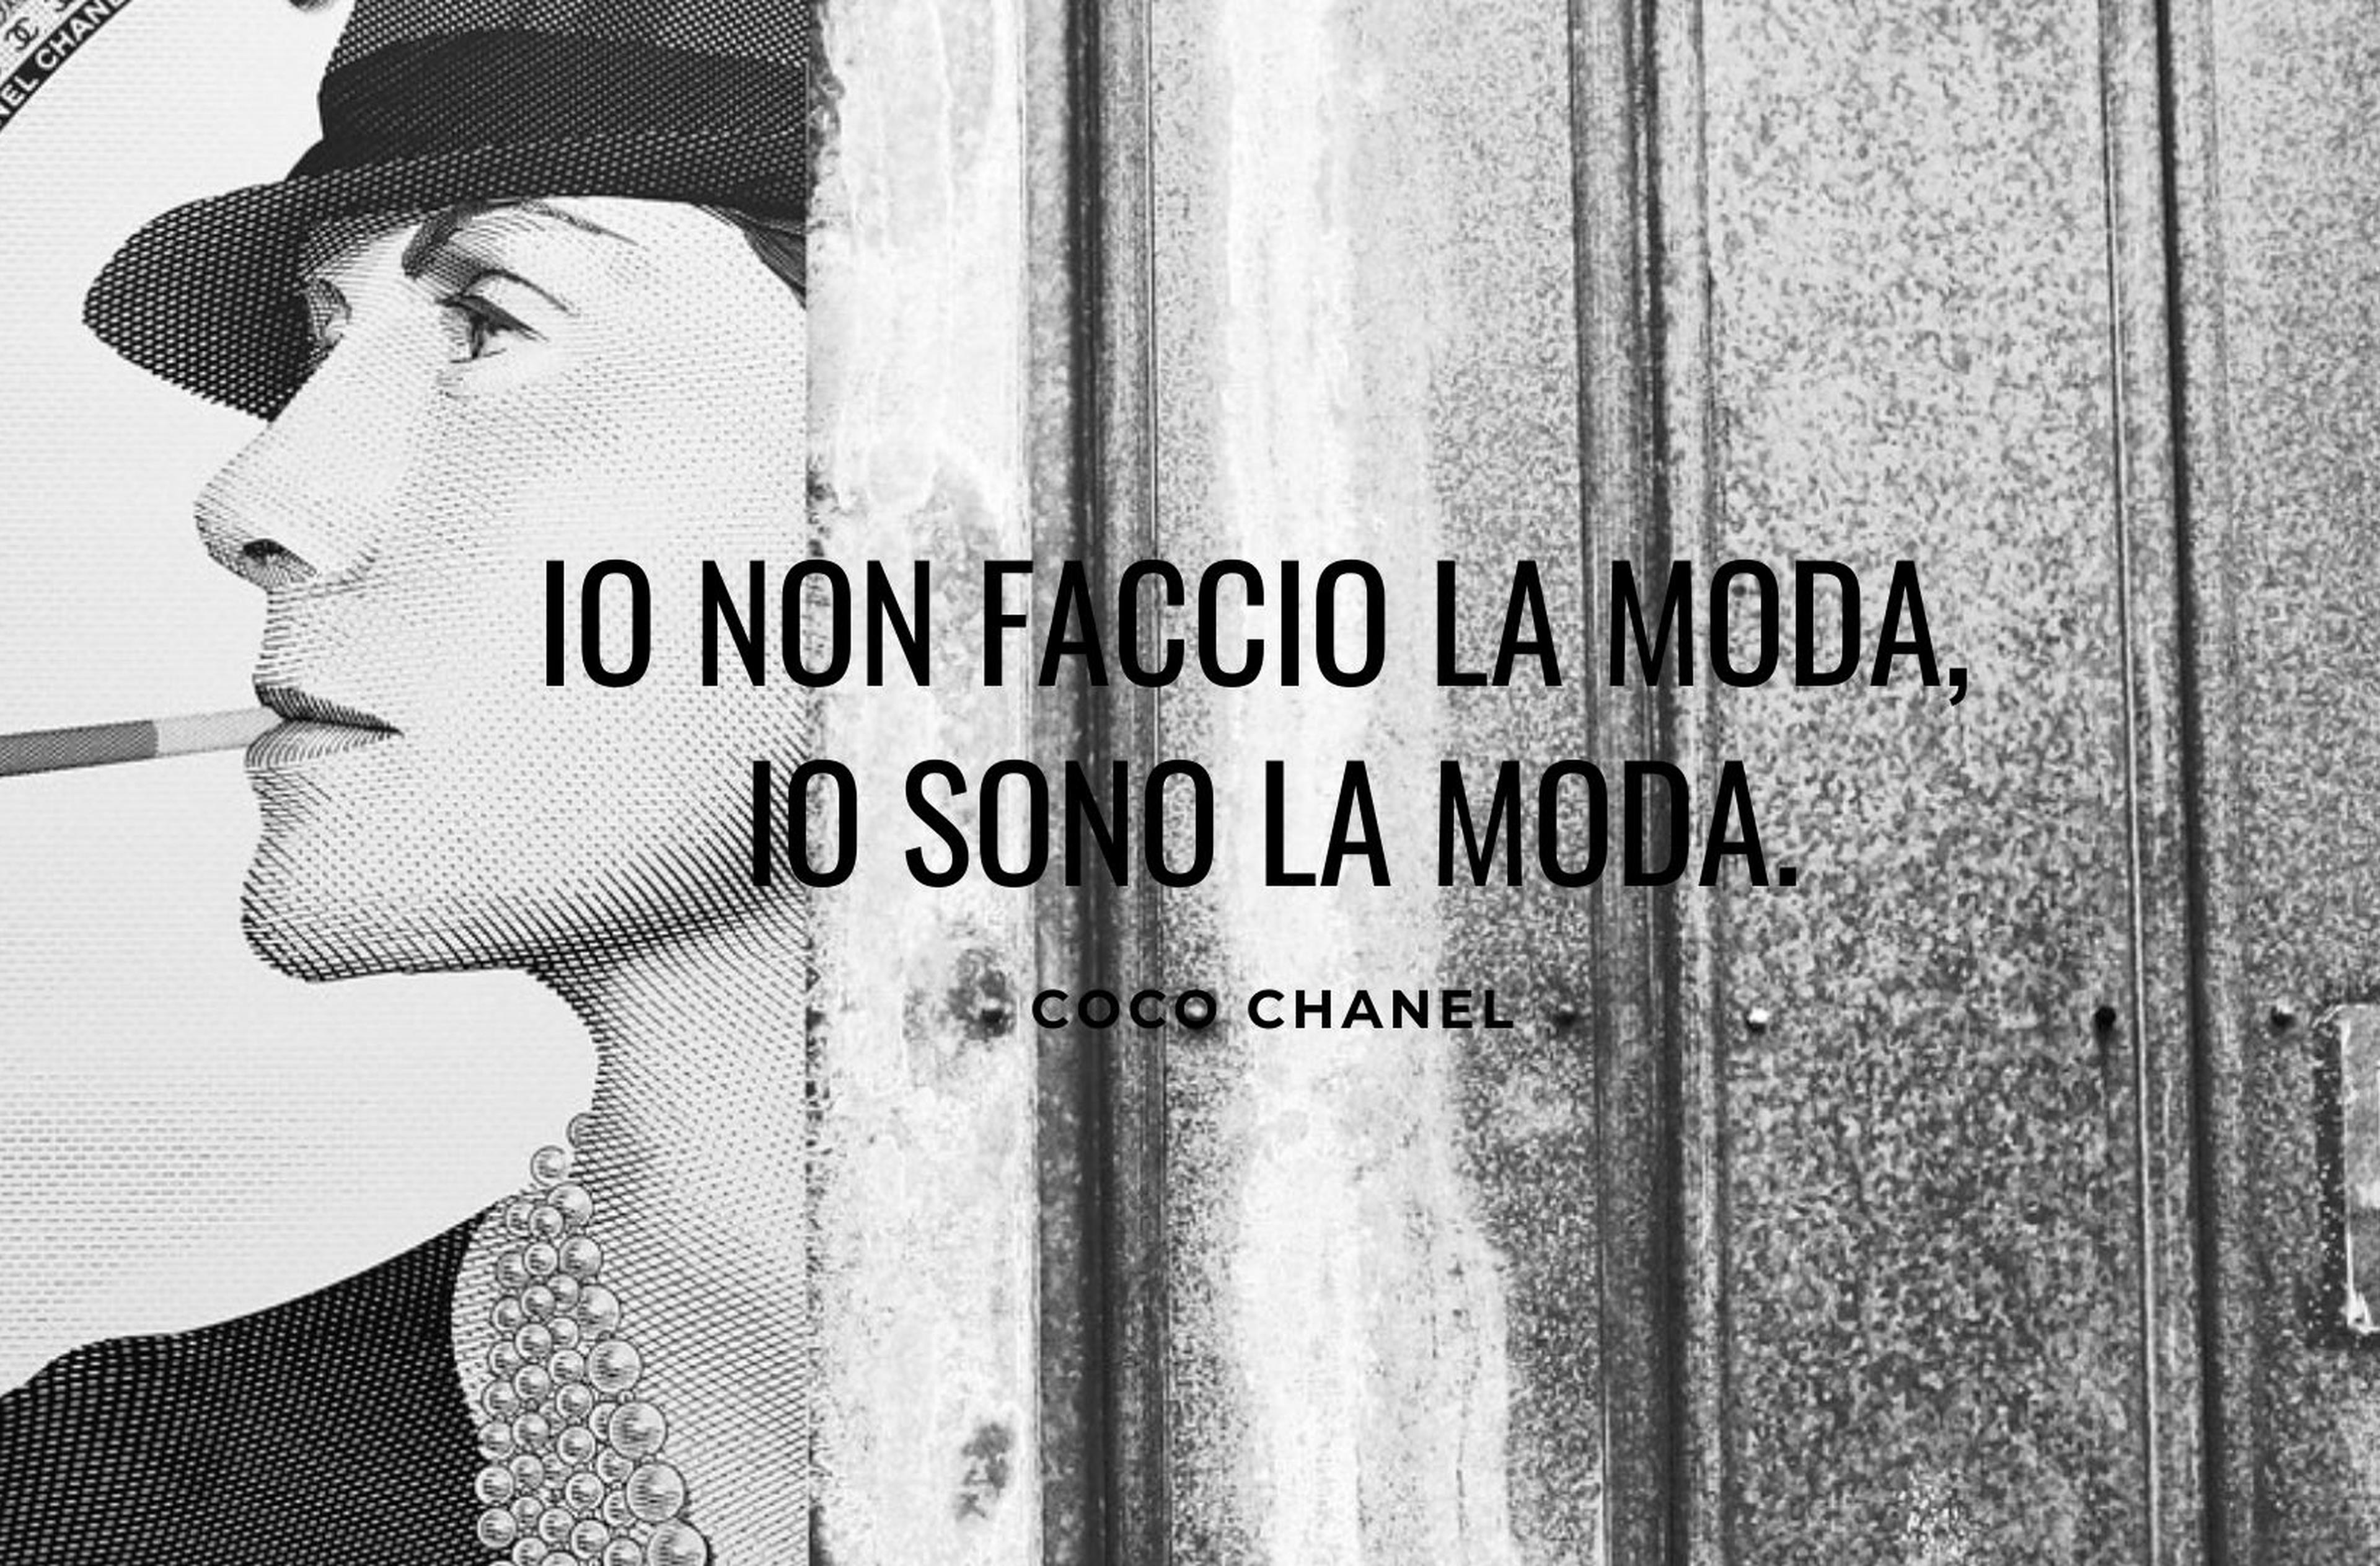 Immagine Coco Chanel con frase celebre